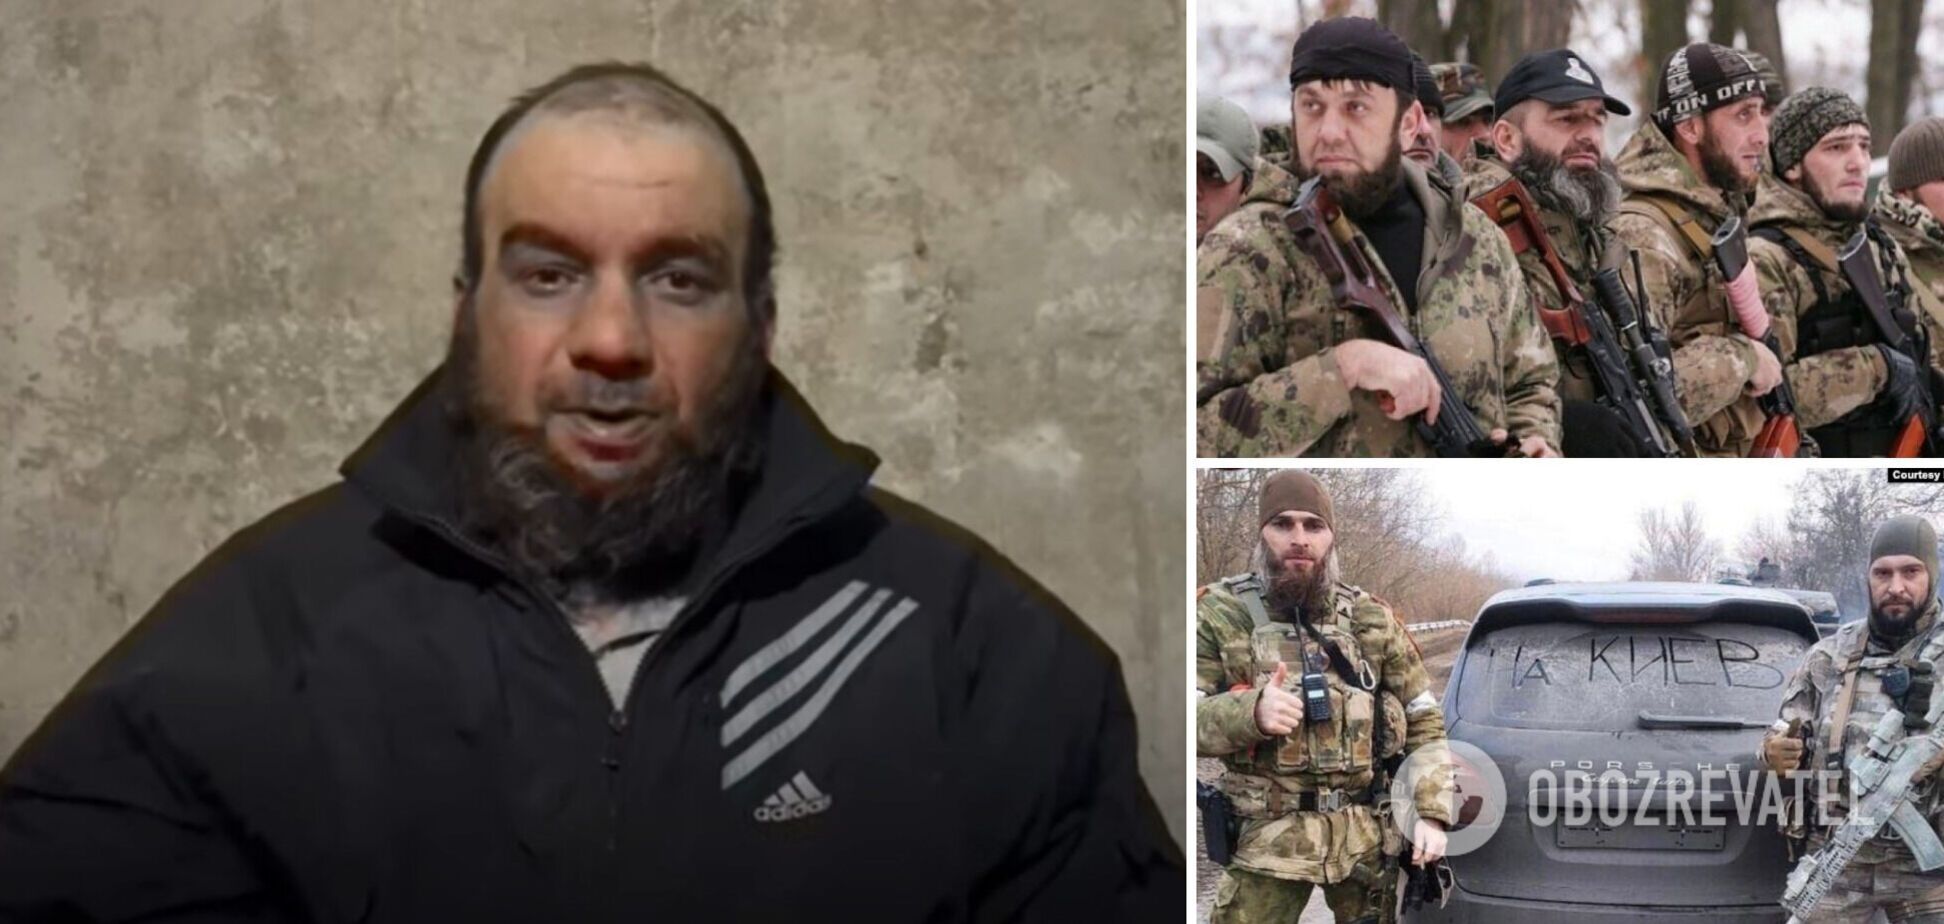 'Трупы сжигают и даже не везут домой': пленный чеченец обратился к своим и призвал к джихаду против России. Видео